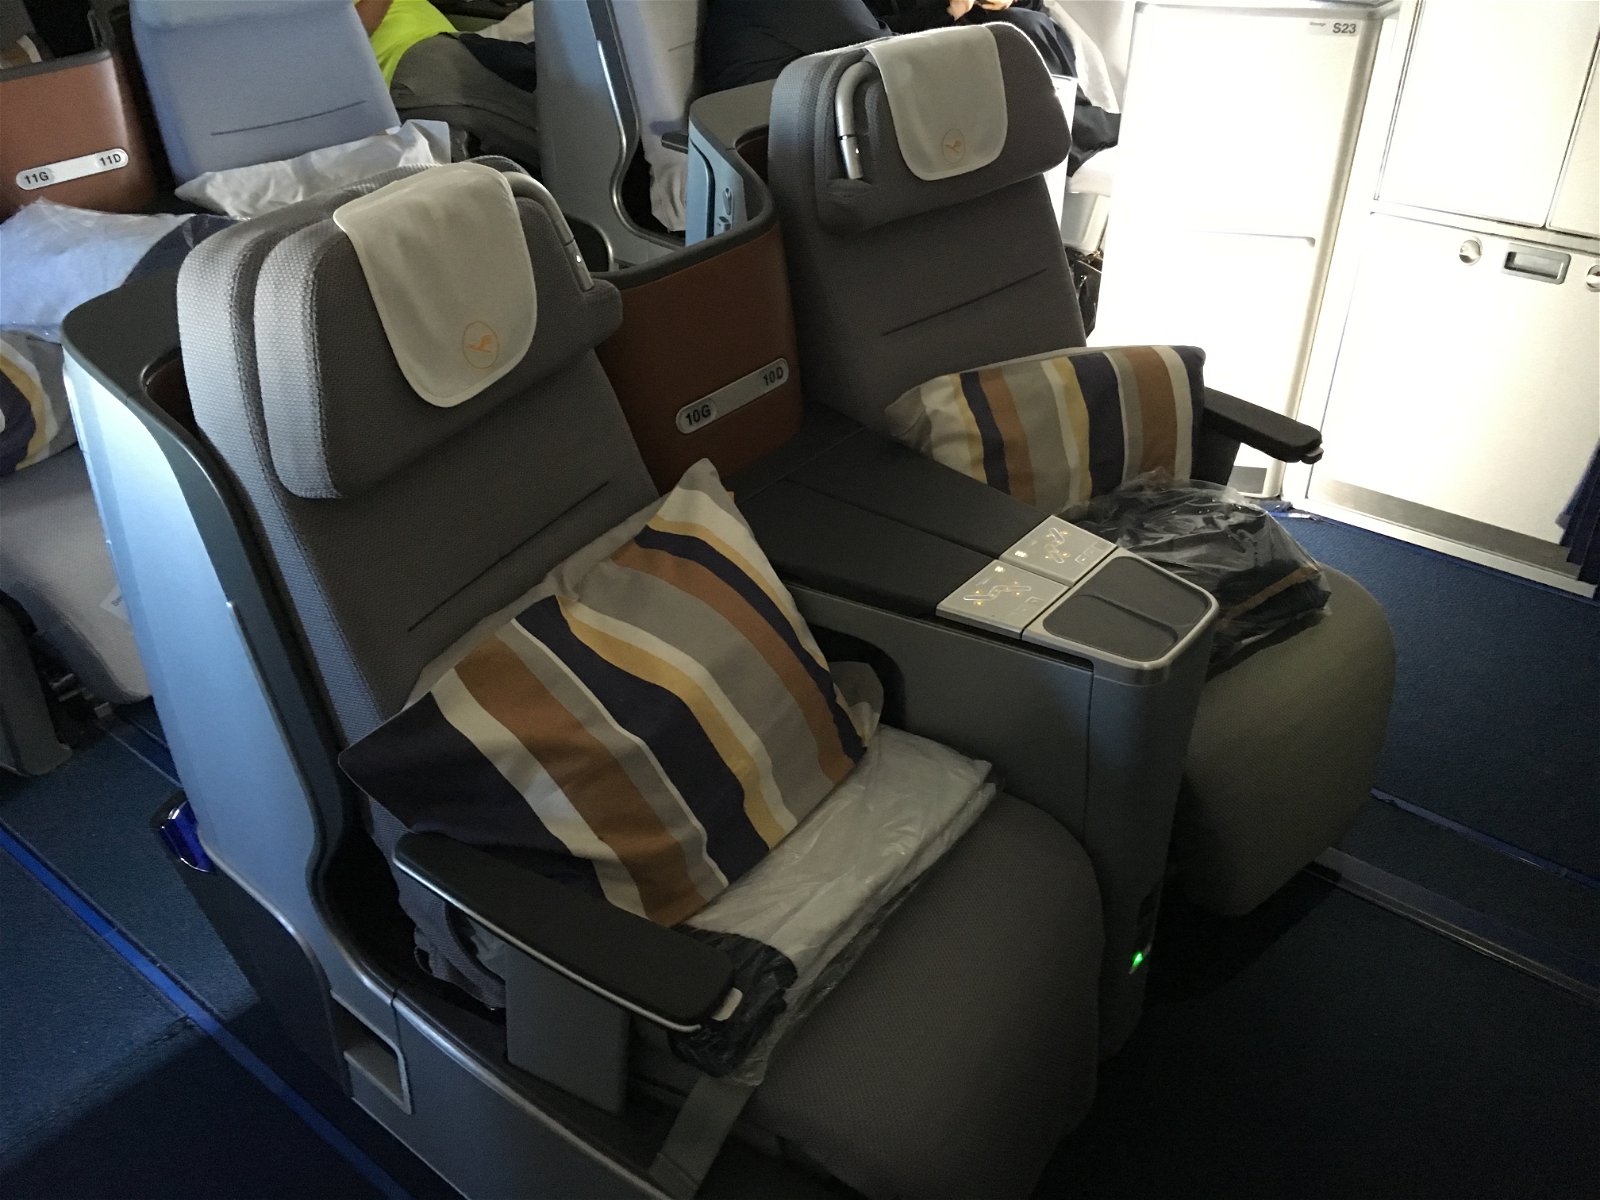 Lufthansa business class cabin 4